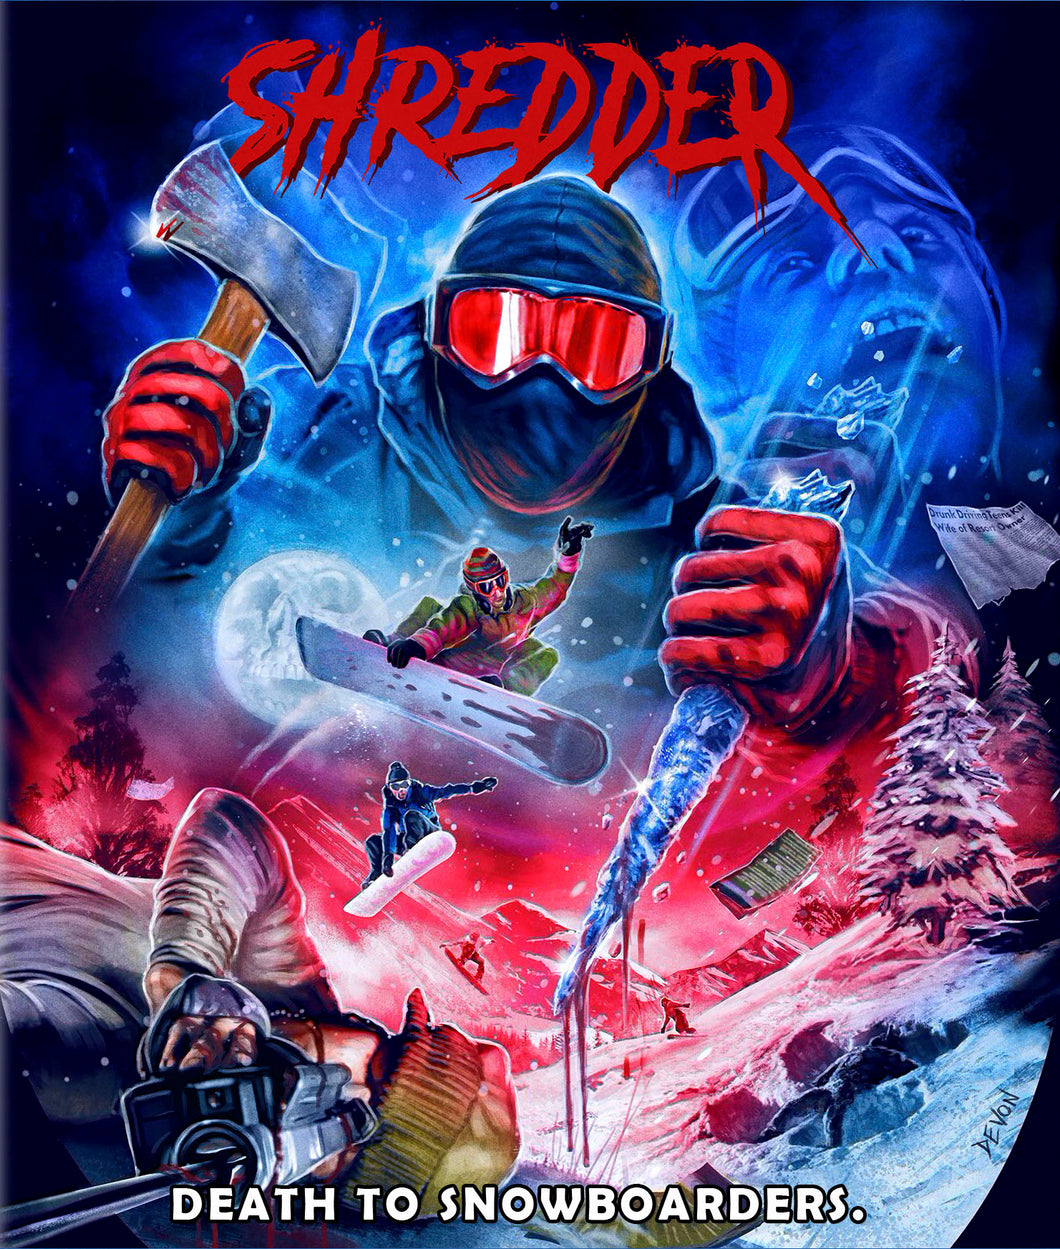 Shredder (Blu-ray)